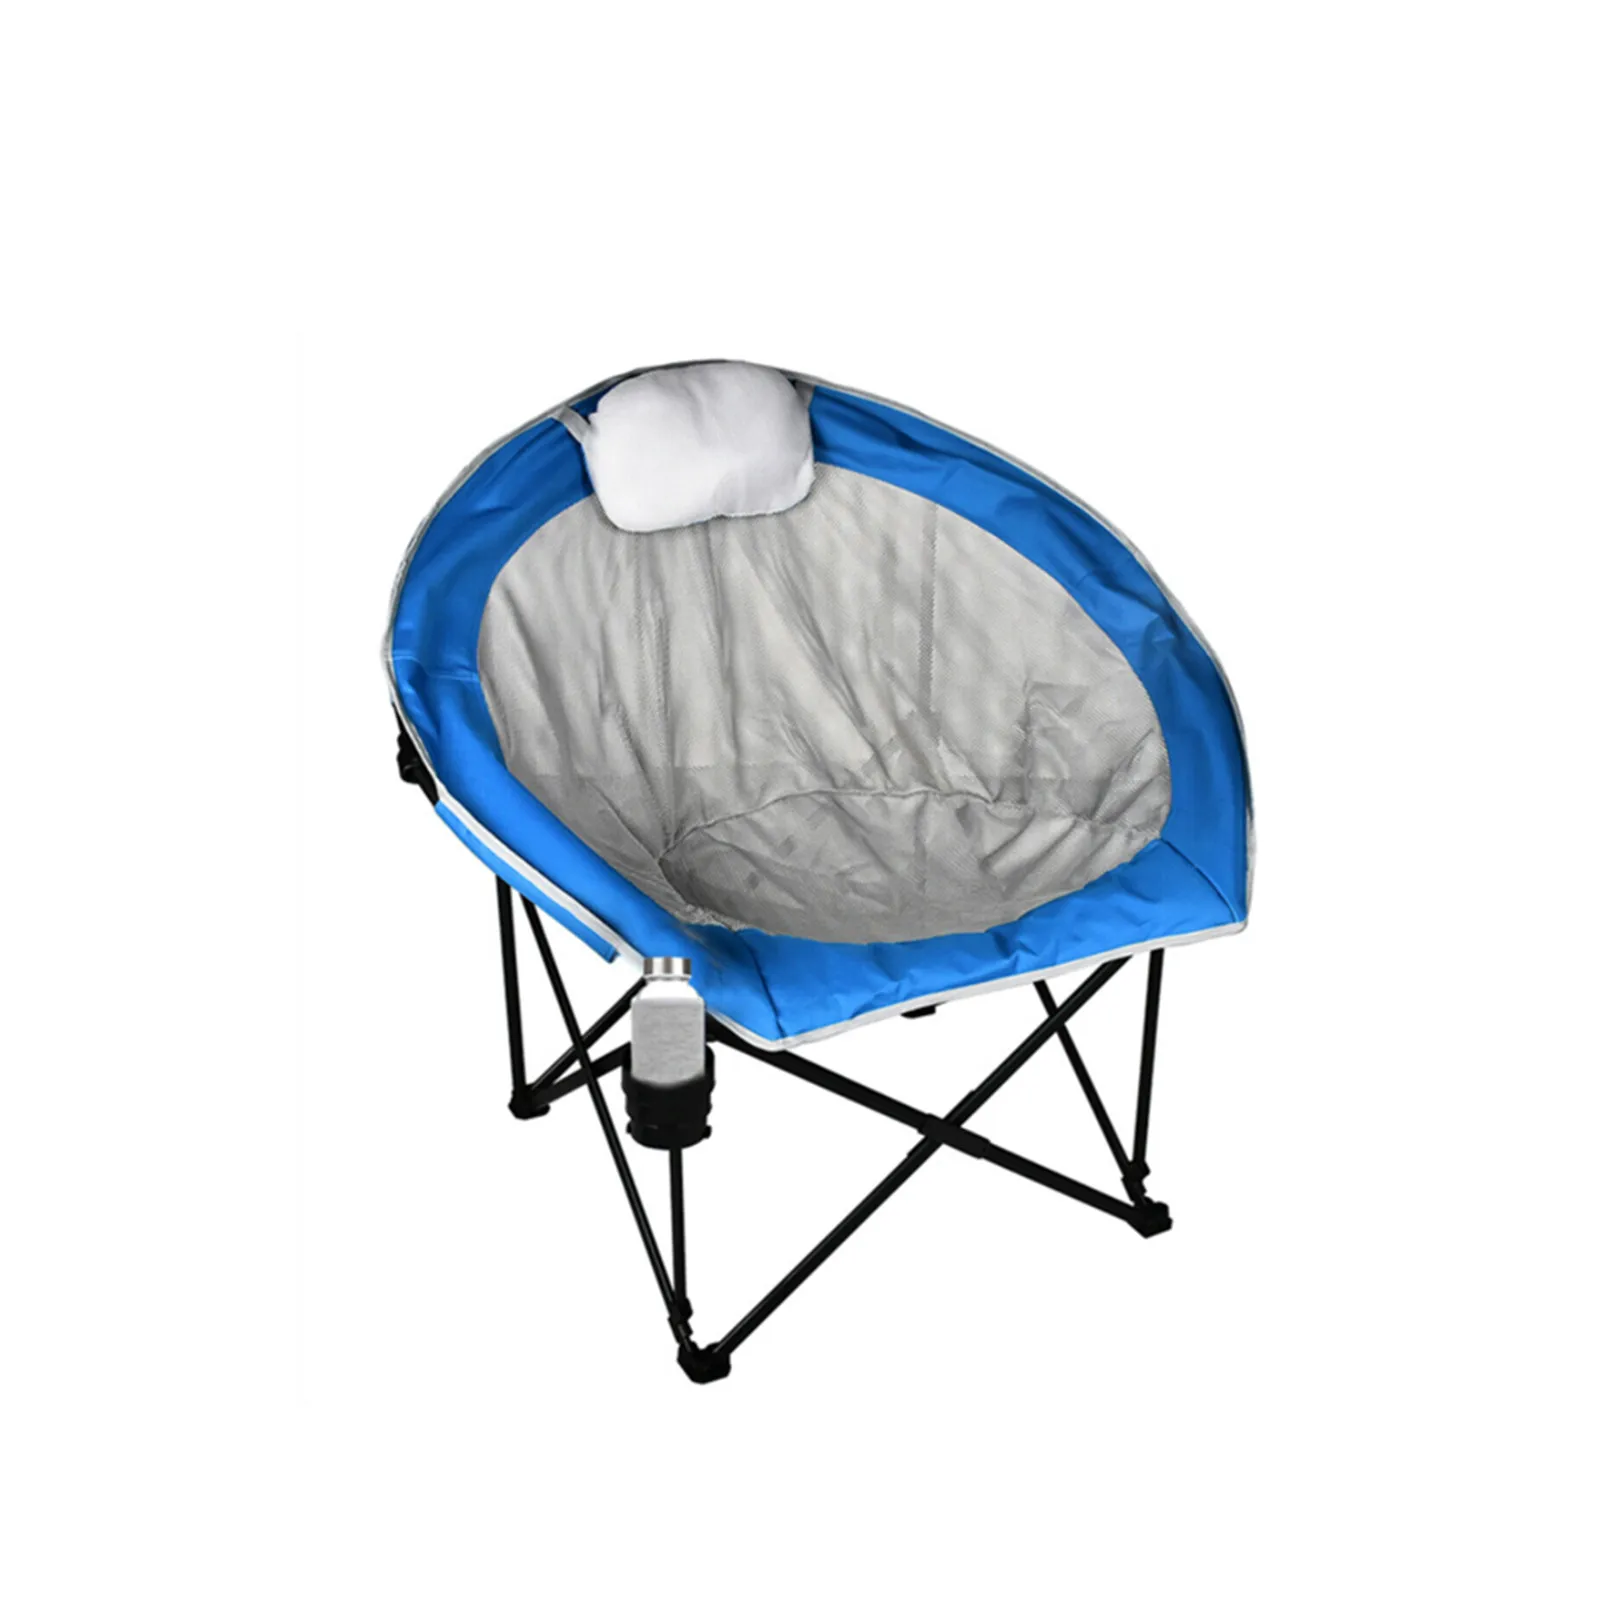 저렴한 휴대용 접이식 의자 600D PVC 캠핑 의자 스틸 프레임 하중 베어링 350 Lbs 베개 바다 블루 [US-Depot]